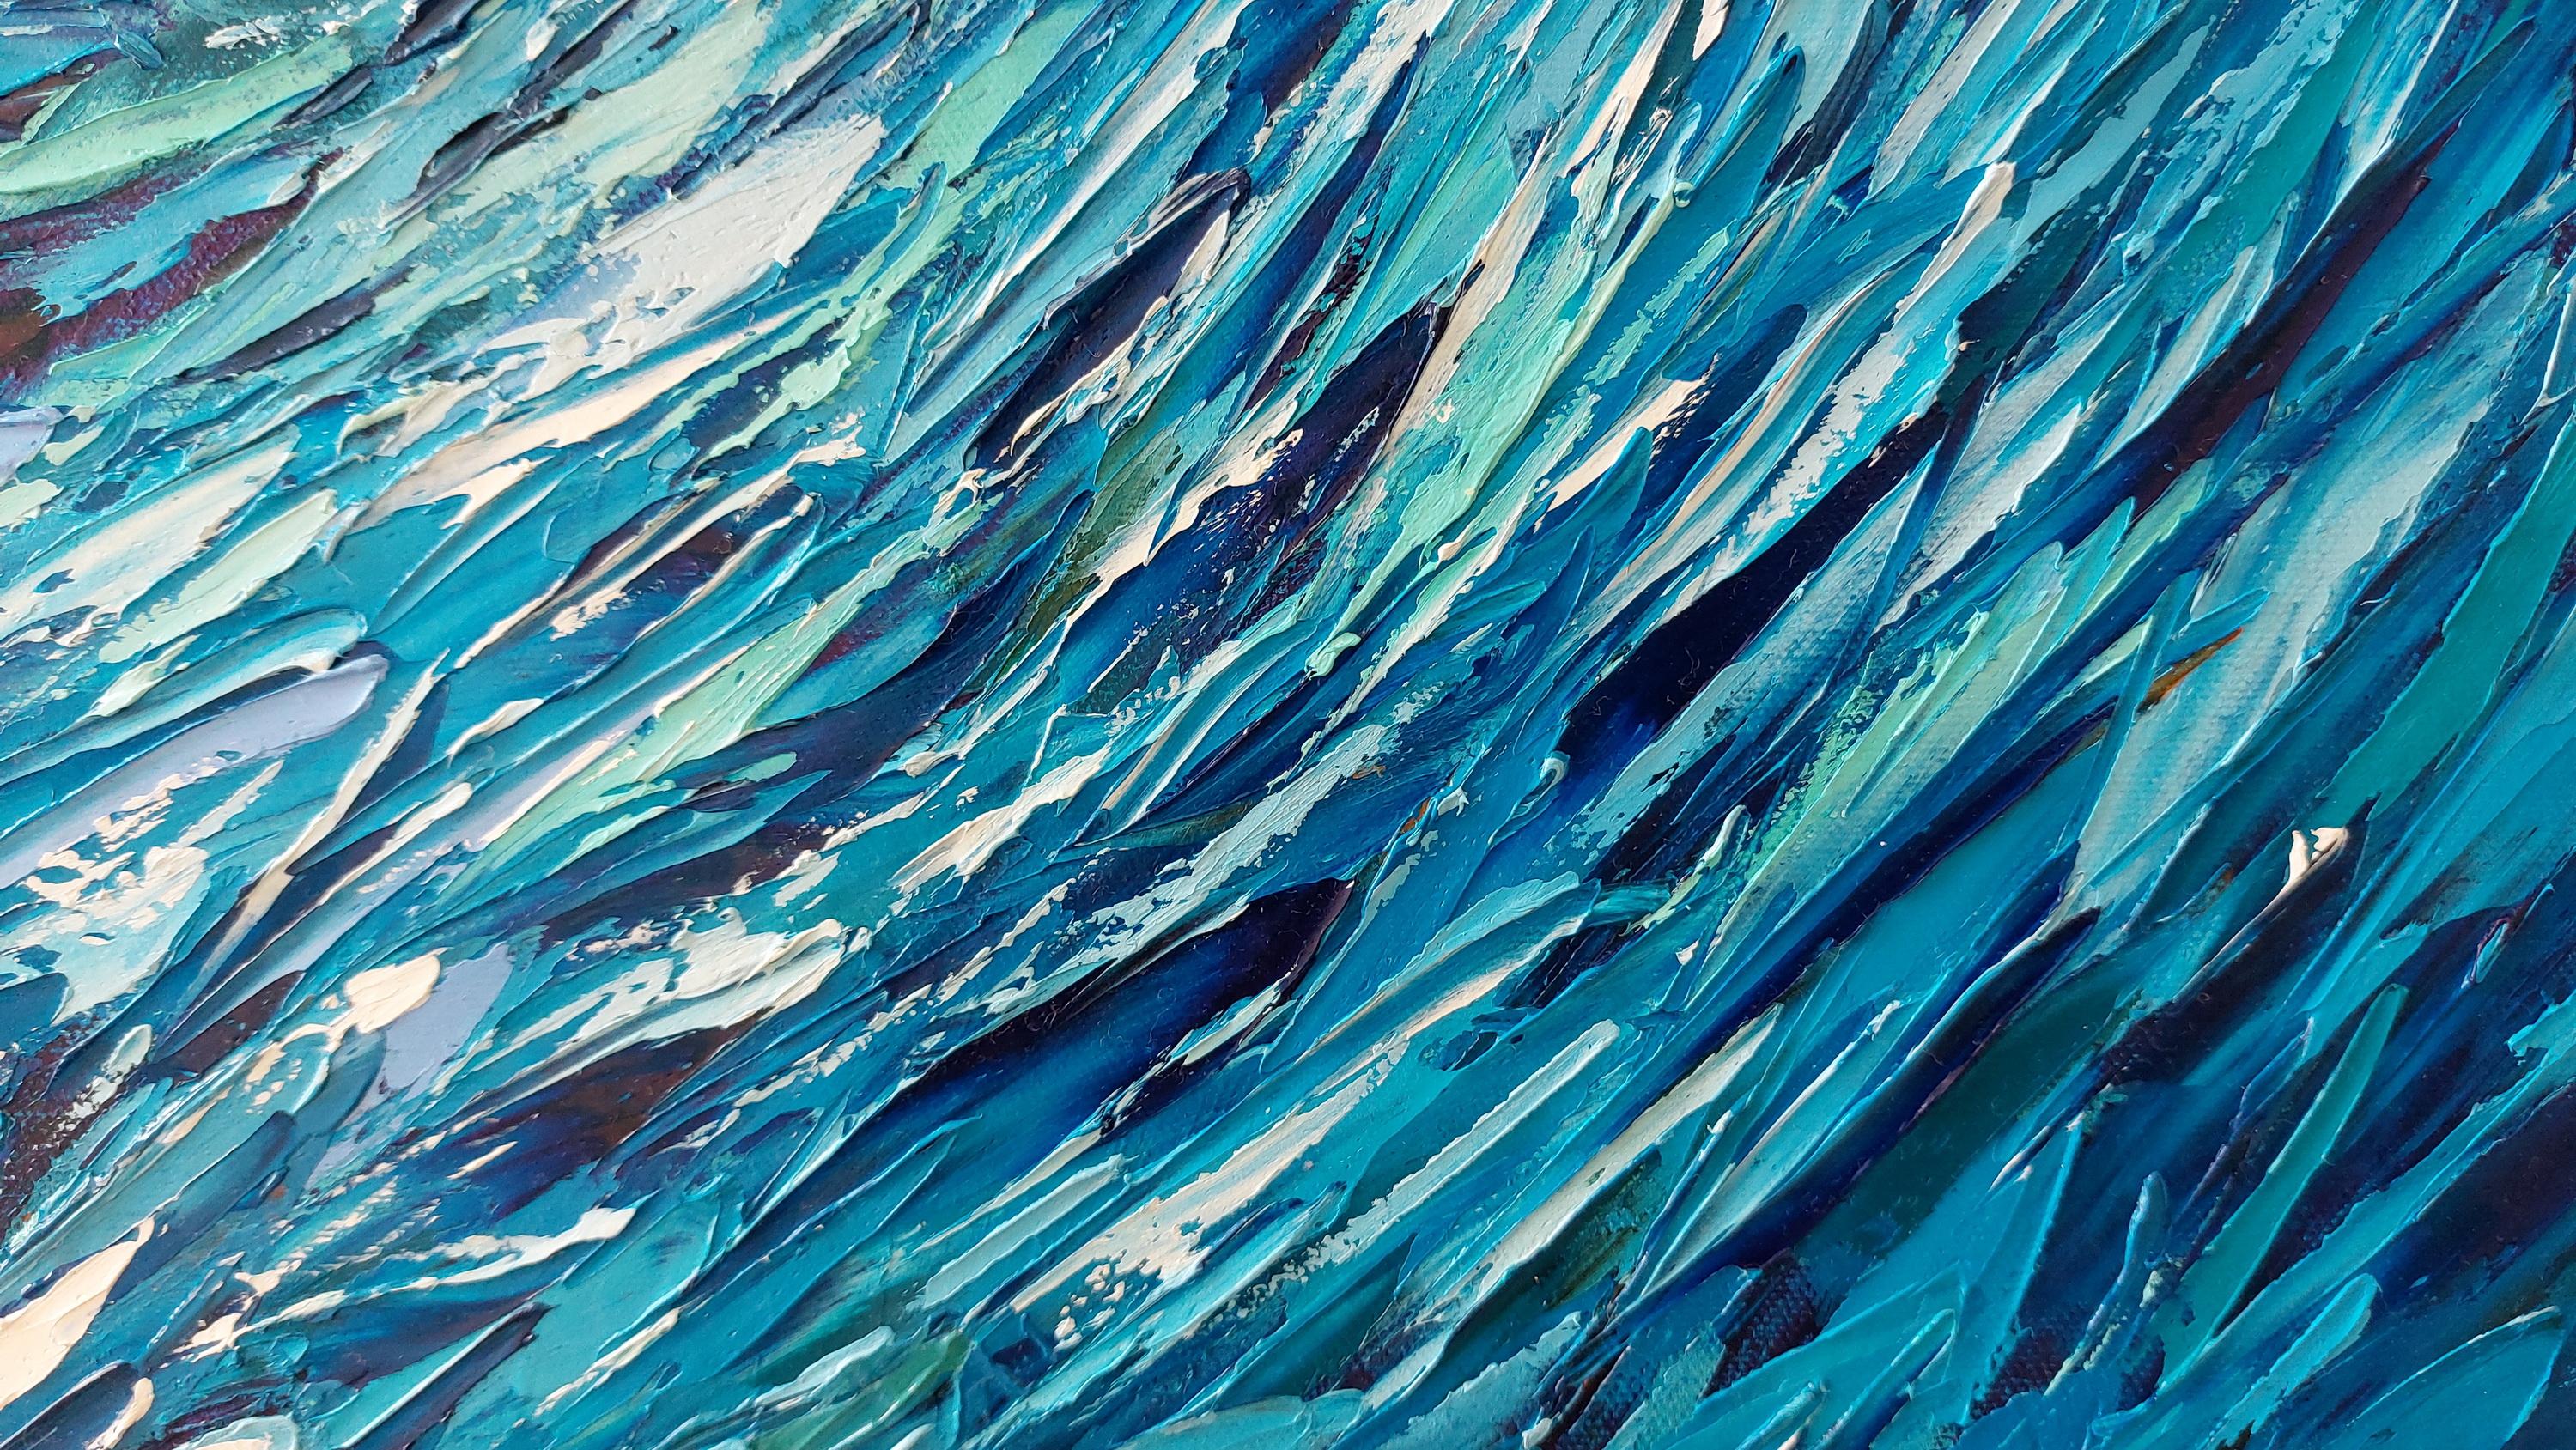  Fisch Whirlpool Sardinen Unterwasser-Kunst Ozean von Olga Nikitina
🎨 Titel: Fisch-Whirlpool
🎨 Größe: 24 x 24 Zoll, 60 x 60 cm
🎨 MATERIAL: Öl, 100% Baumwolle, Spachtelmasse, Spachtel
🎨 Versand: Galerie-Standardverpackung, Versand mit